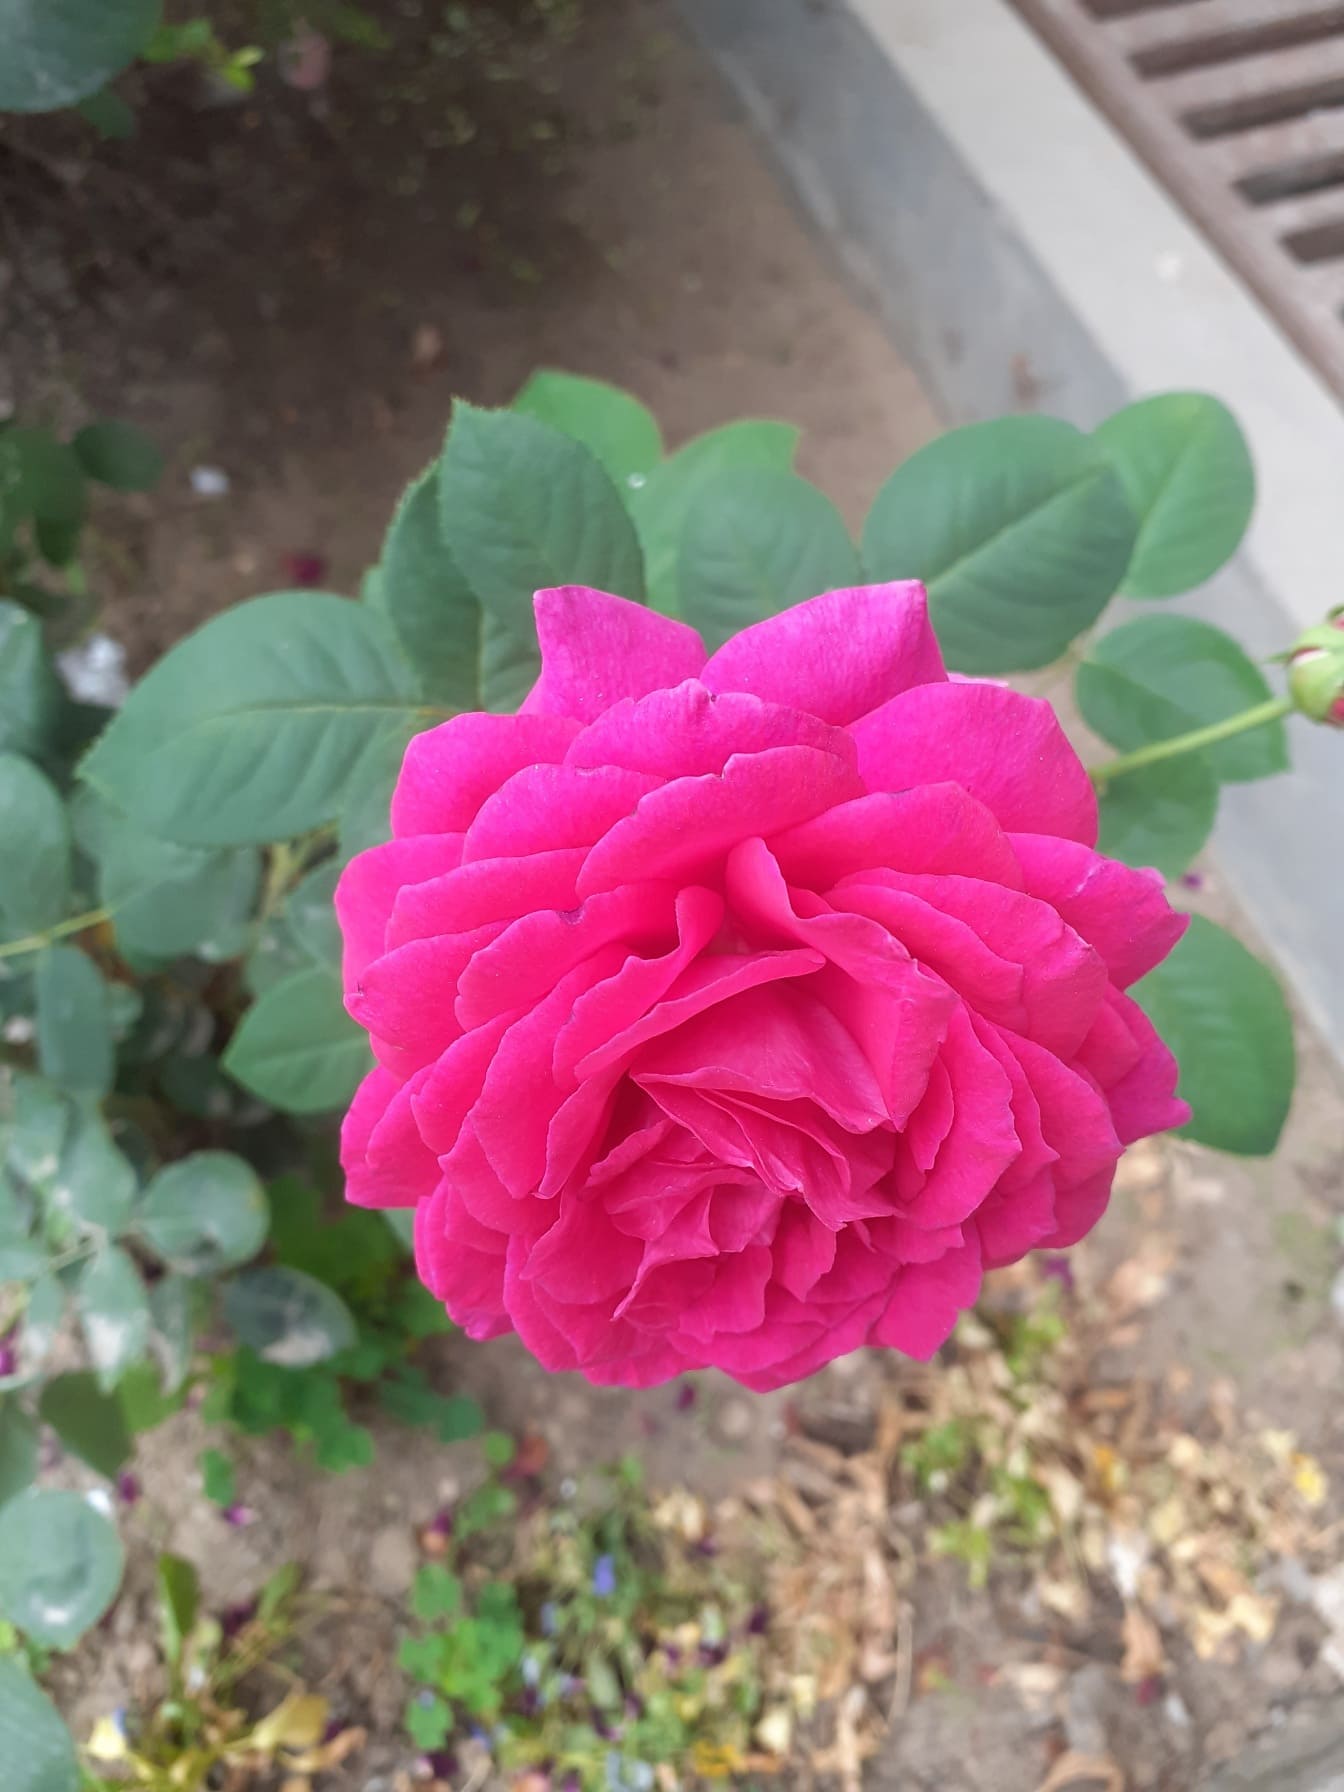 Lyserød rose i haven nærbillede